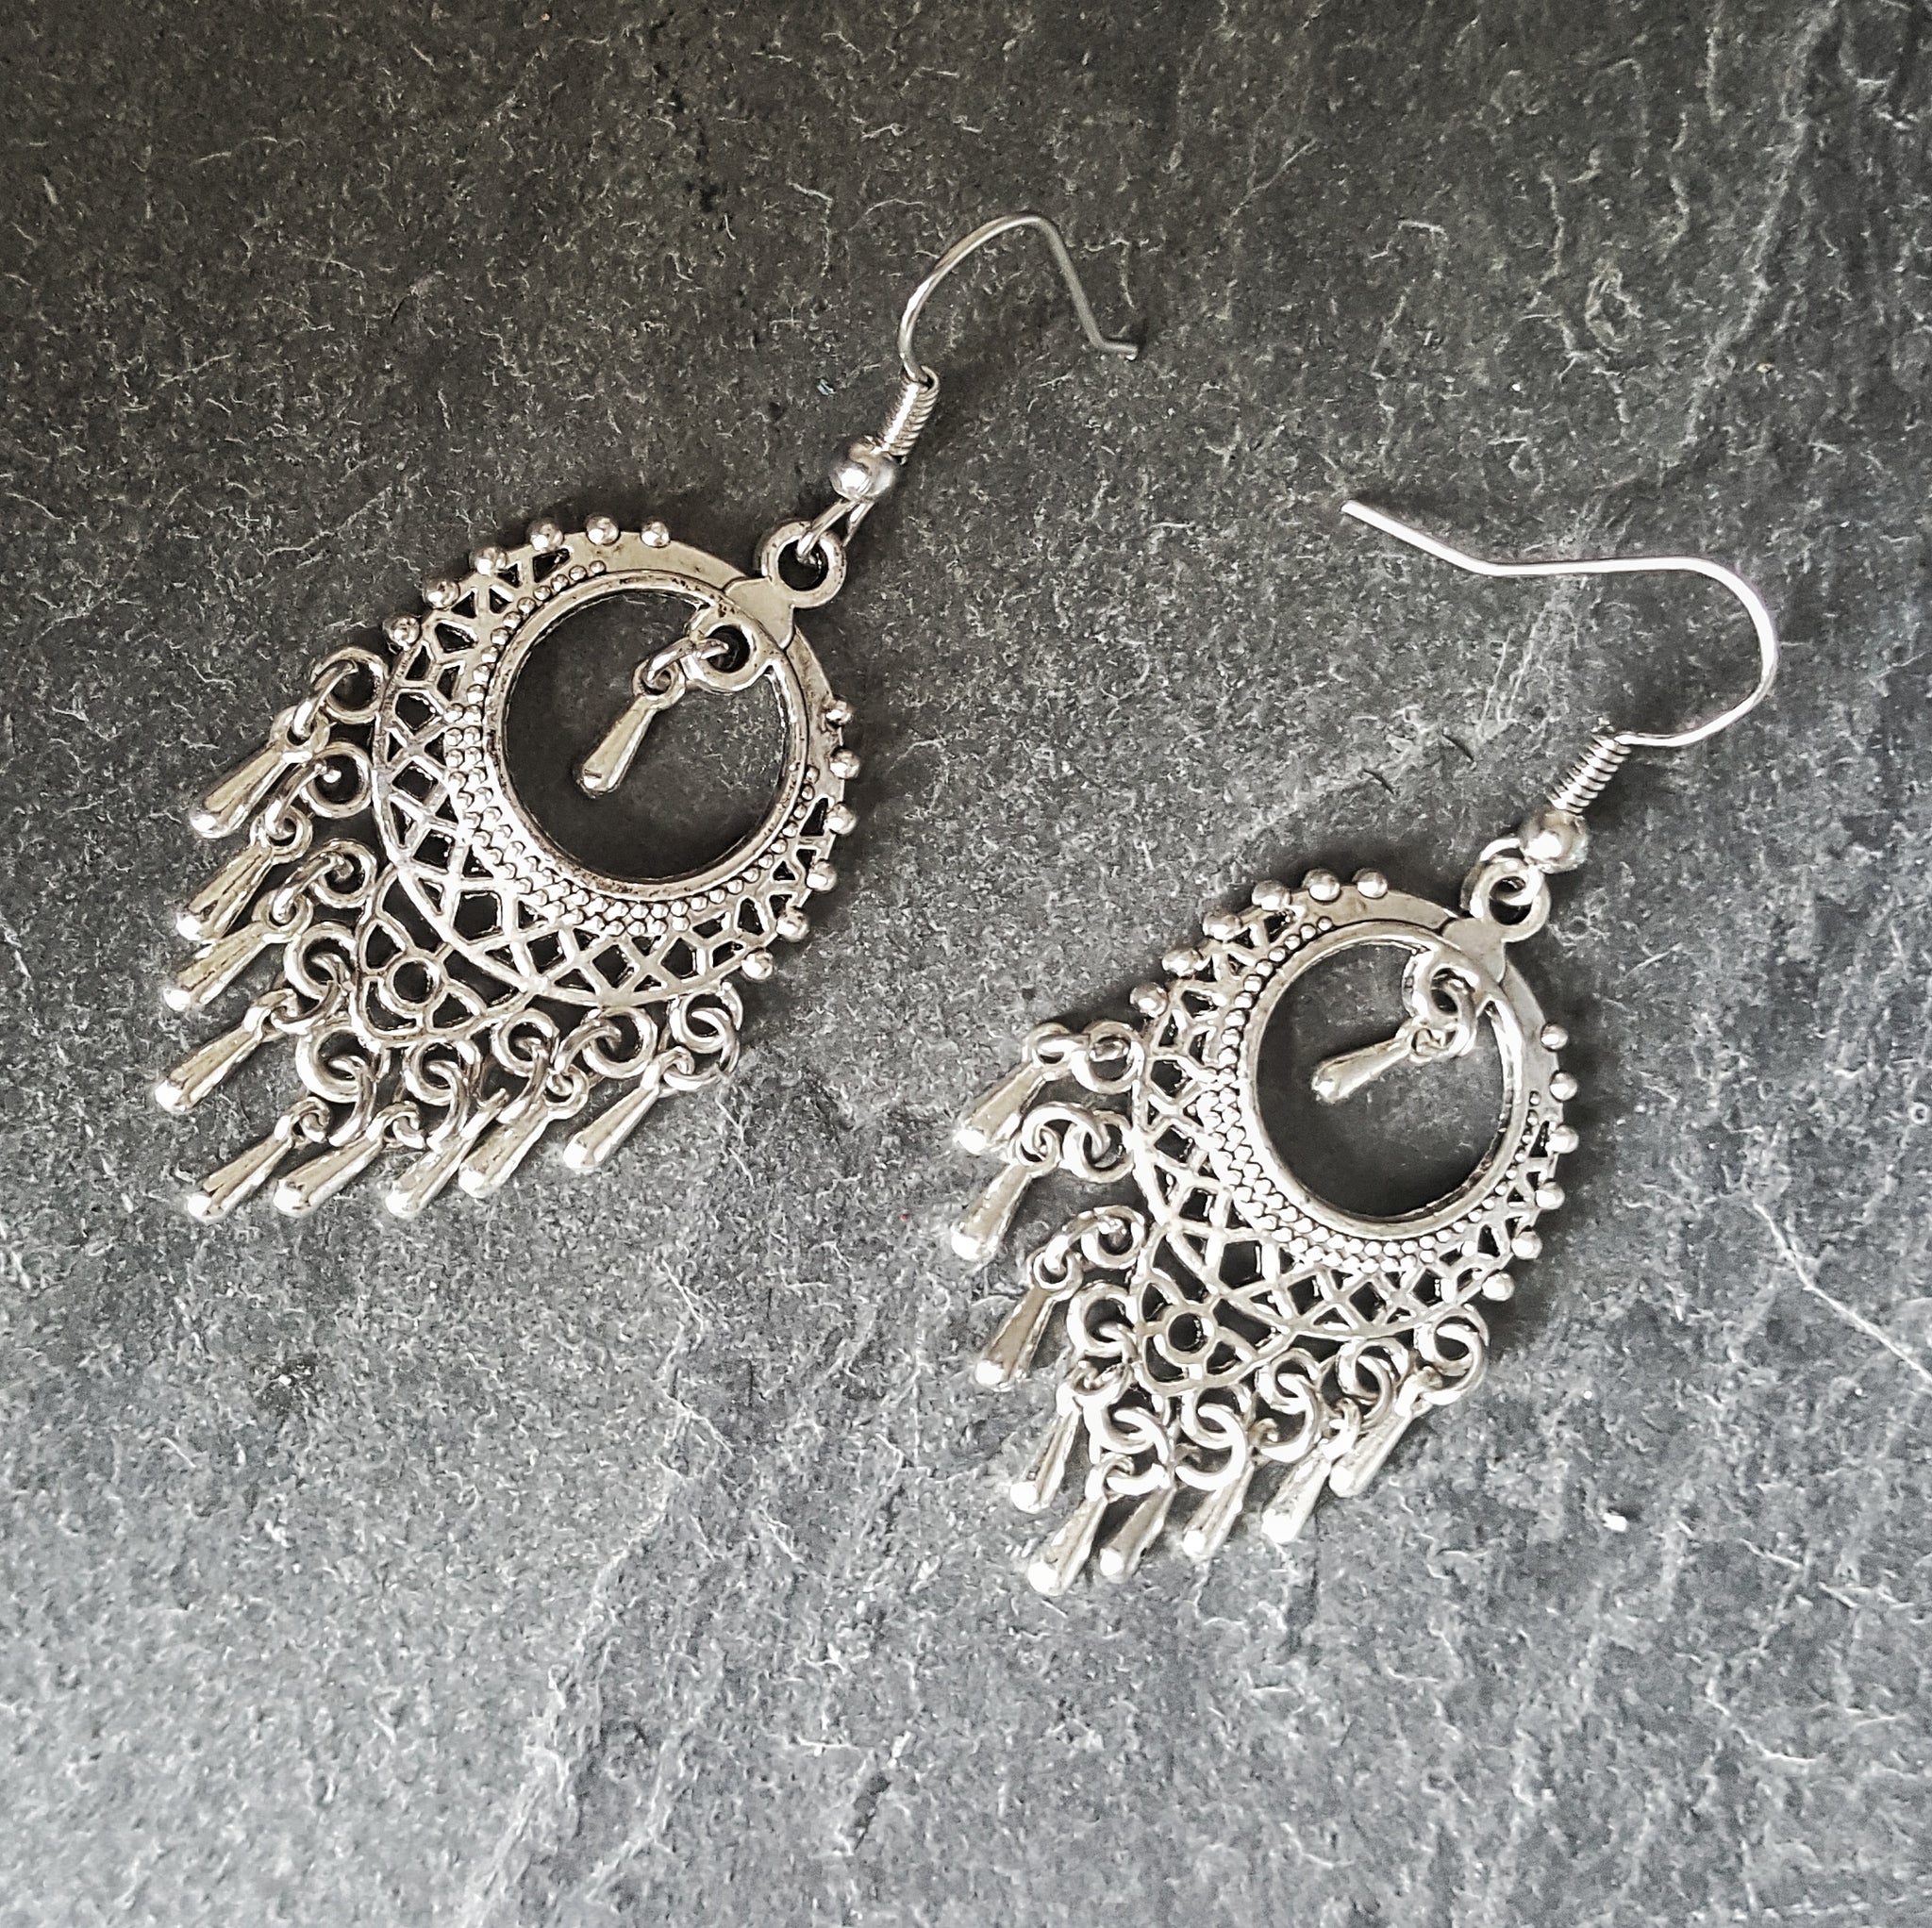 Ornate Silver Boho Chandelier Earrings Bohemian Jewelry - DRAVYNMOOR